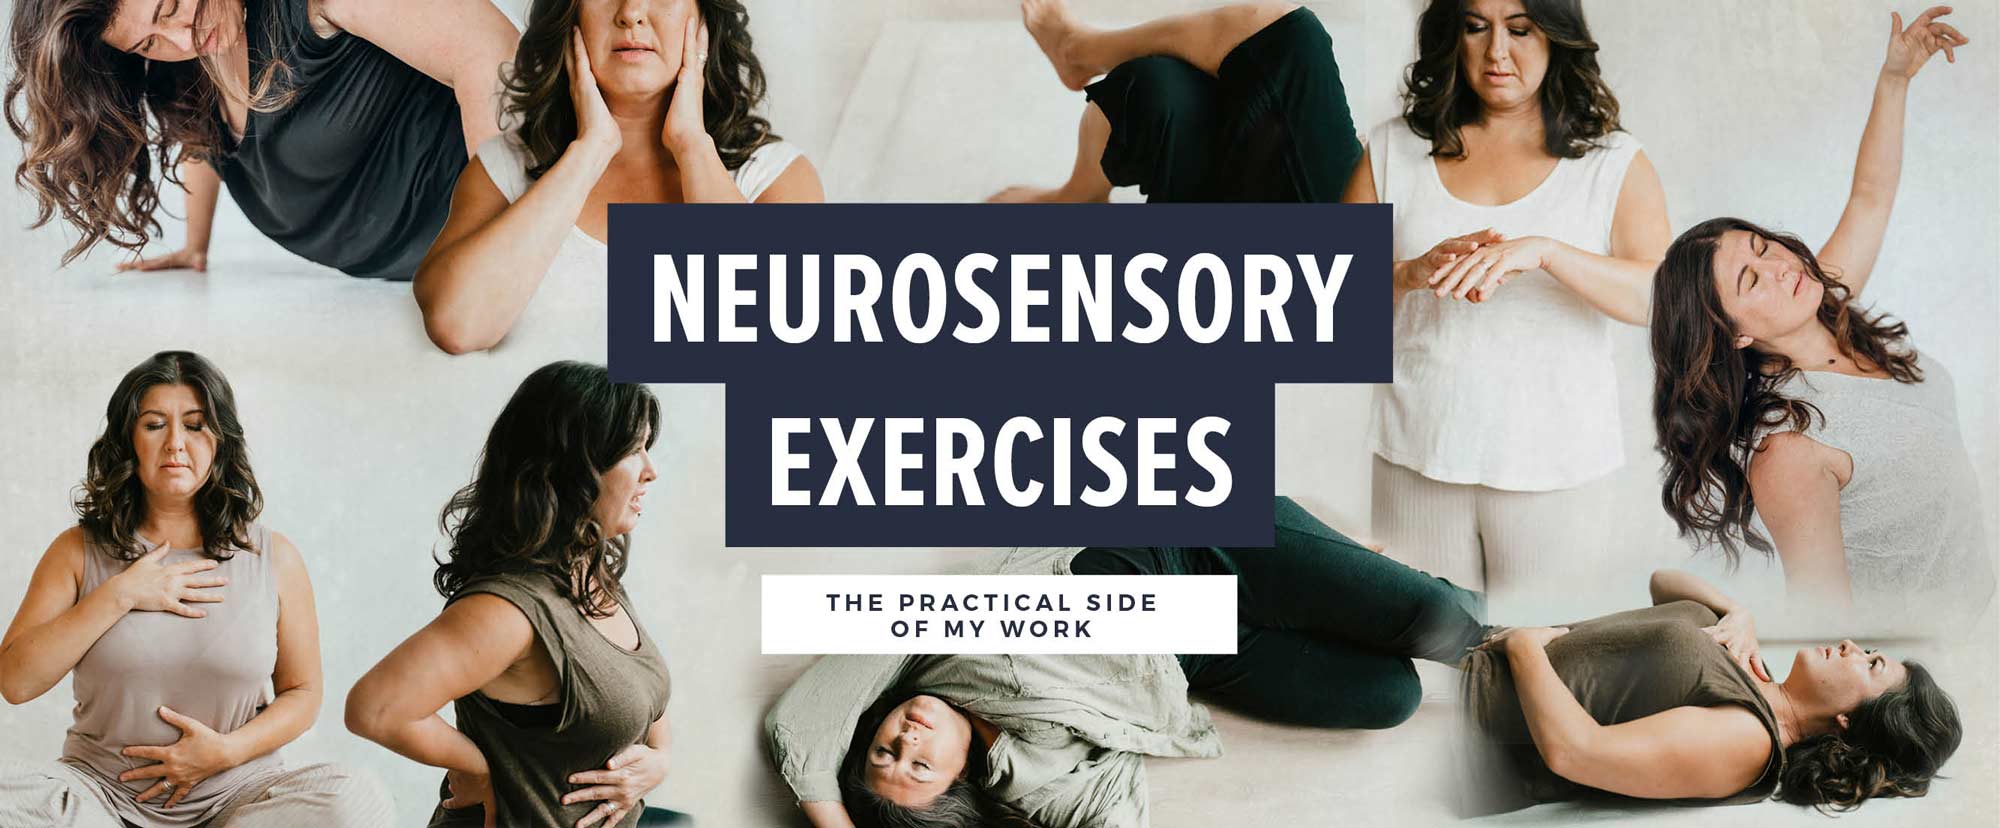 neurosensory exercises